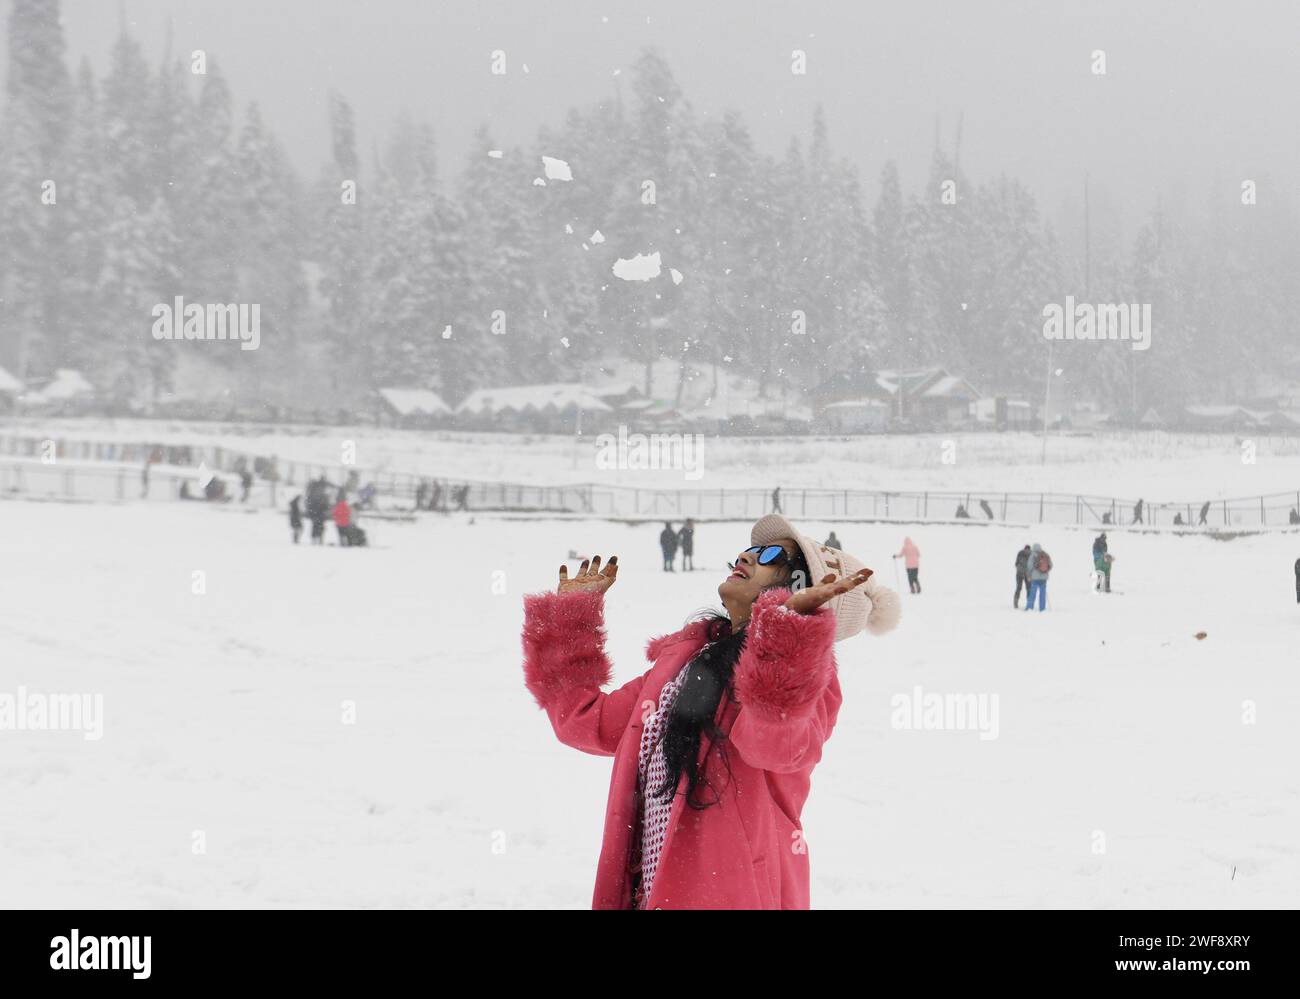 Kashmir, India. 29 gennaio 2024. Le nevicate fresche nei tratti più alti della valle del Kashmir hanno infranto uno dei più lunghi periodi di asciutto di circa due mesi di questa stagione. Una fresca nevicata ha attirato la gente del posto e i turisti. L'economia dello stato è fortemente dipendente dall'industria turistica e la nevicata dopo una lunga attesa attira i turisti nella scintillante valle d'argento. Foto Stock